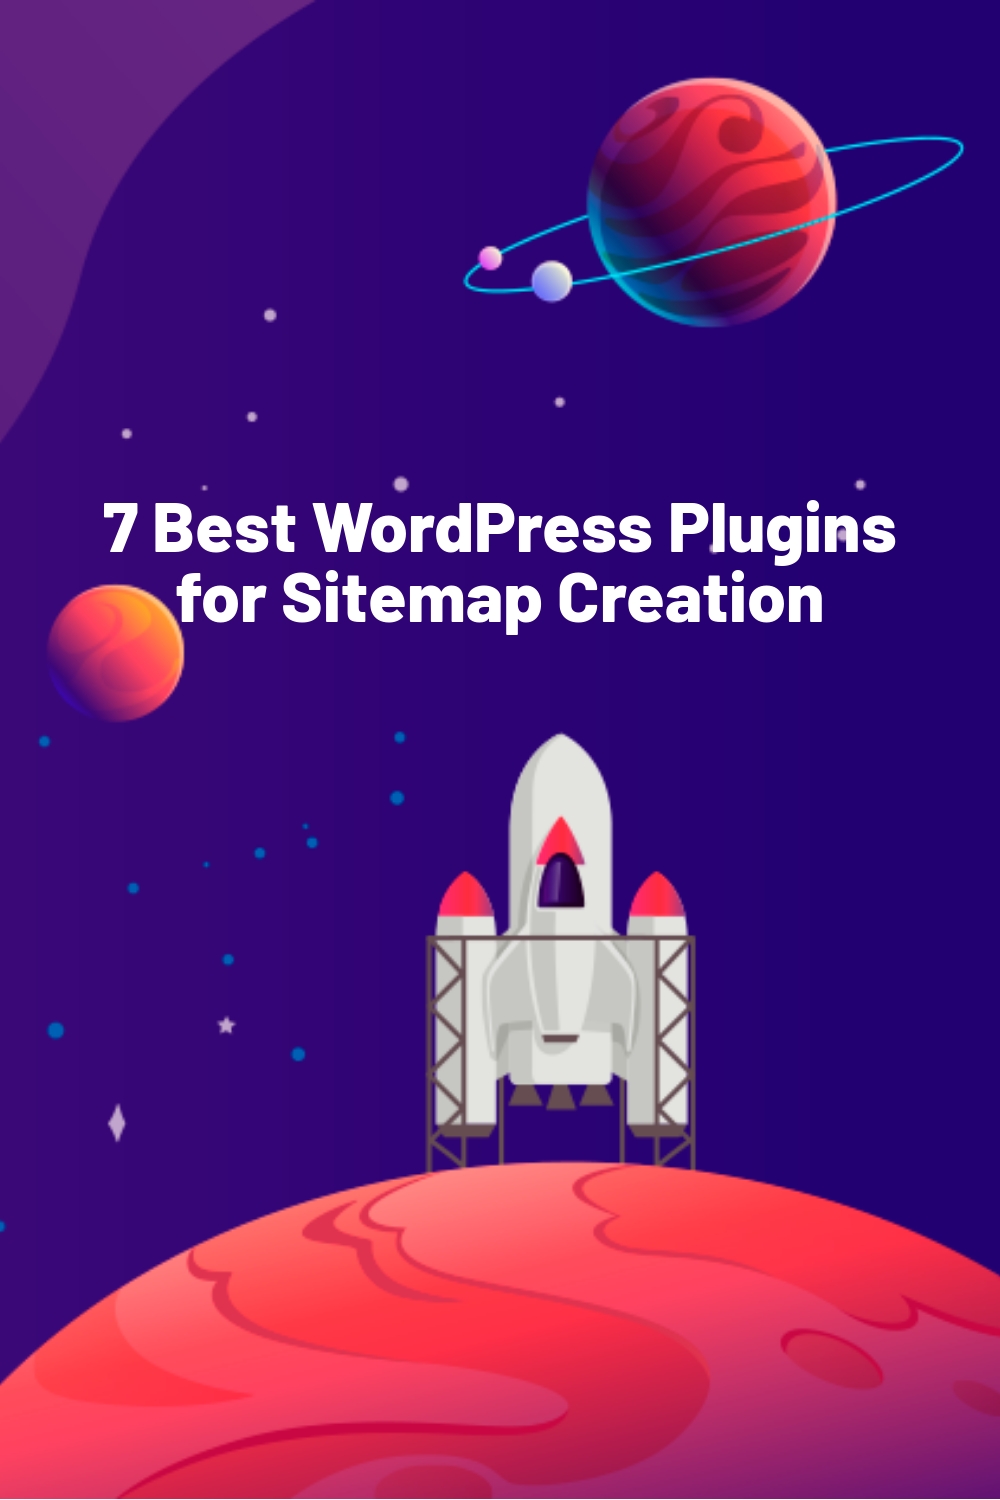 7 Best WordPress Plugins for Sitemap Creation